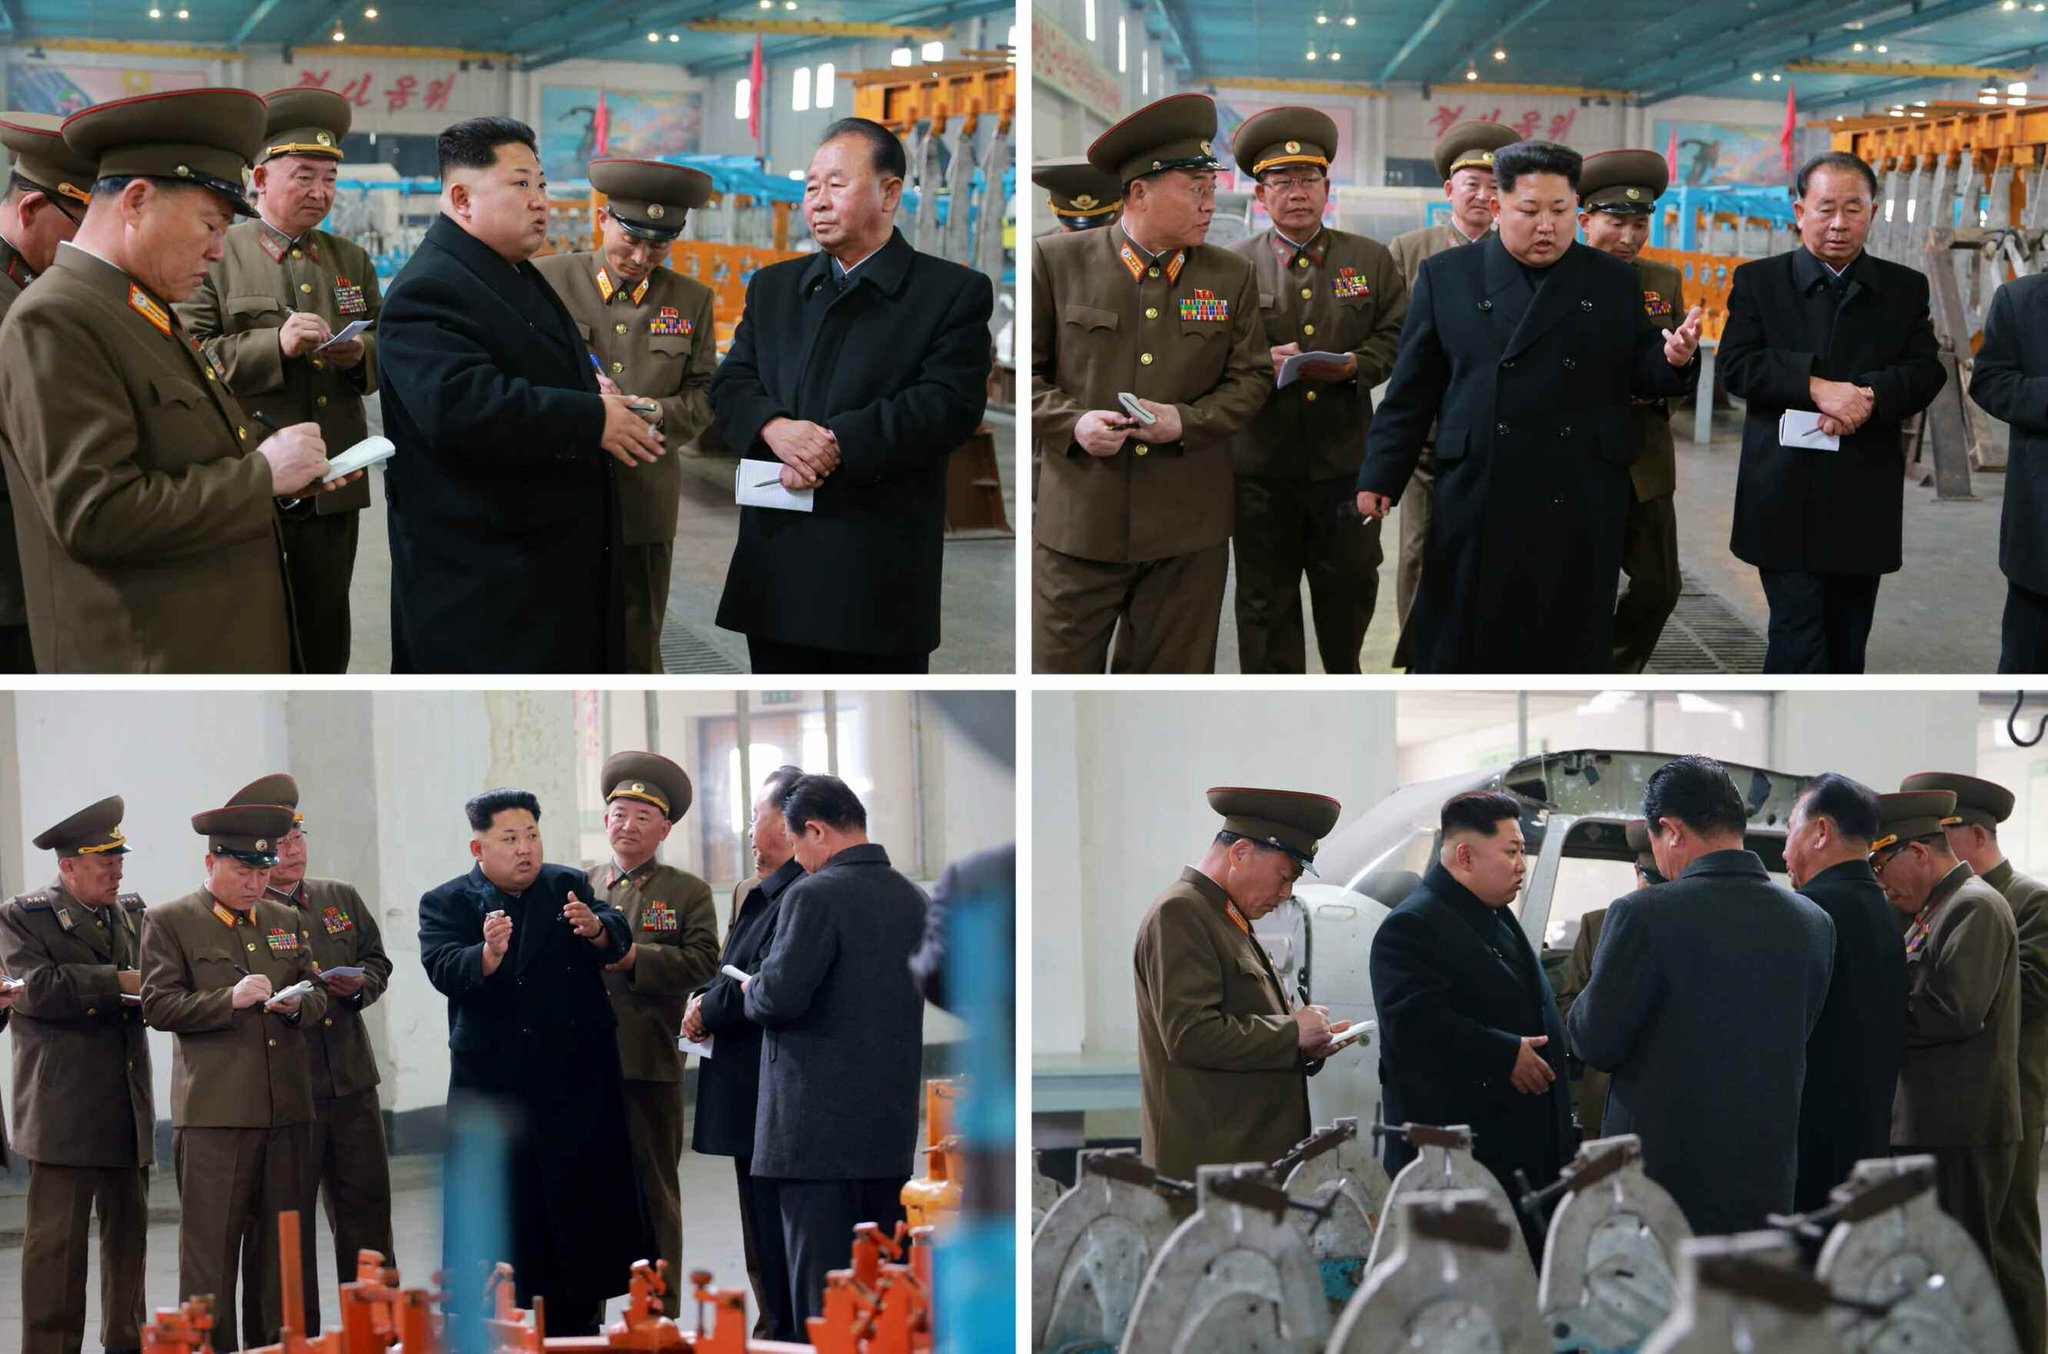 النشاطات العسكريه للزعيم الكوري الشمالي كيم جونغ اون .......متجدد  - صفحة 2 CBfVWs4UcAAyGiS